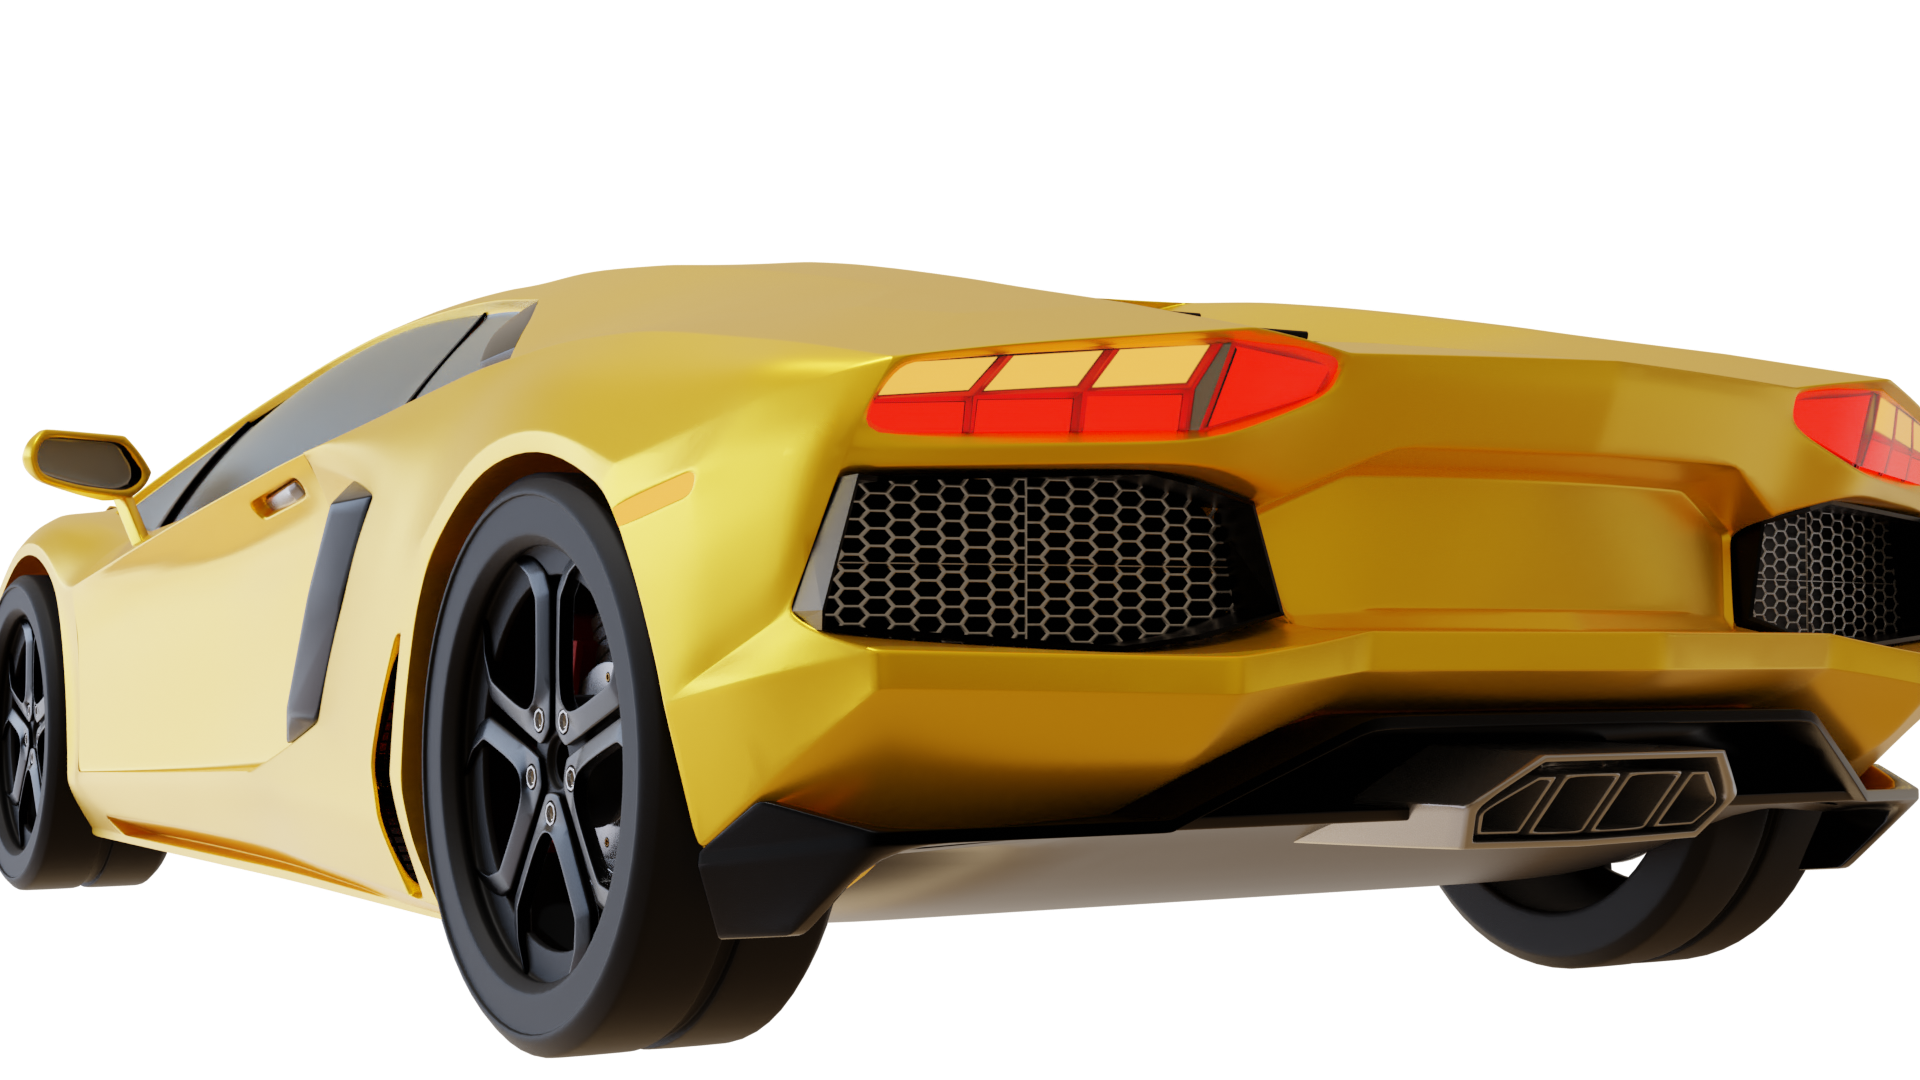 Lamborghini 2.0 preview image 2